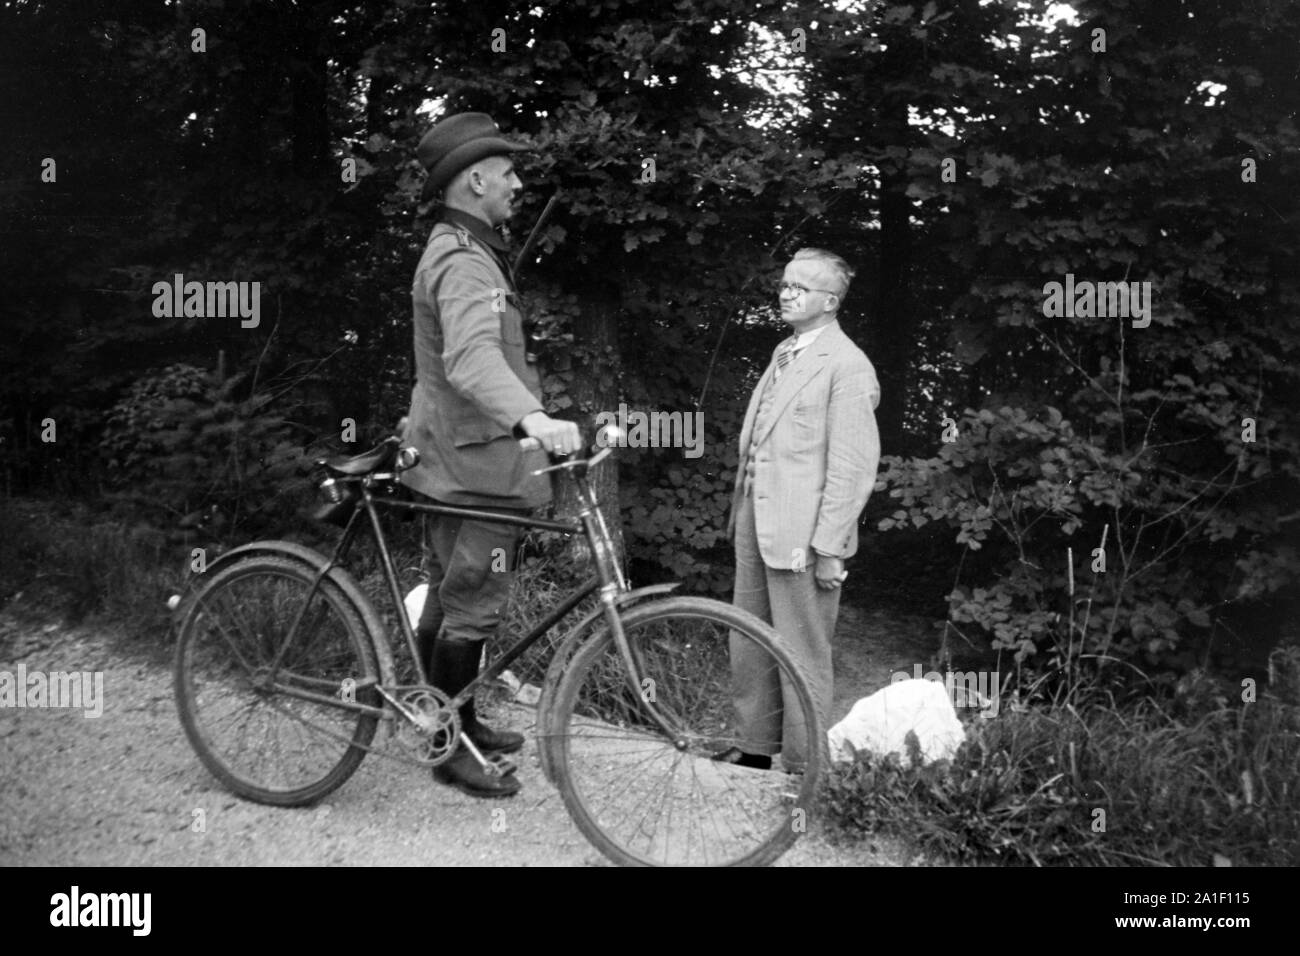 Ein Förster bei seinem Fahrrad unterhält sich mit einem älteren Herrn am Wegesrand, Deutschland 1939. Un garde forestier avec son vélo de parler à un vieil homme qu'il a rencontrés sur son chemin, Allemagne 1939. Banque D'Images